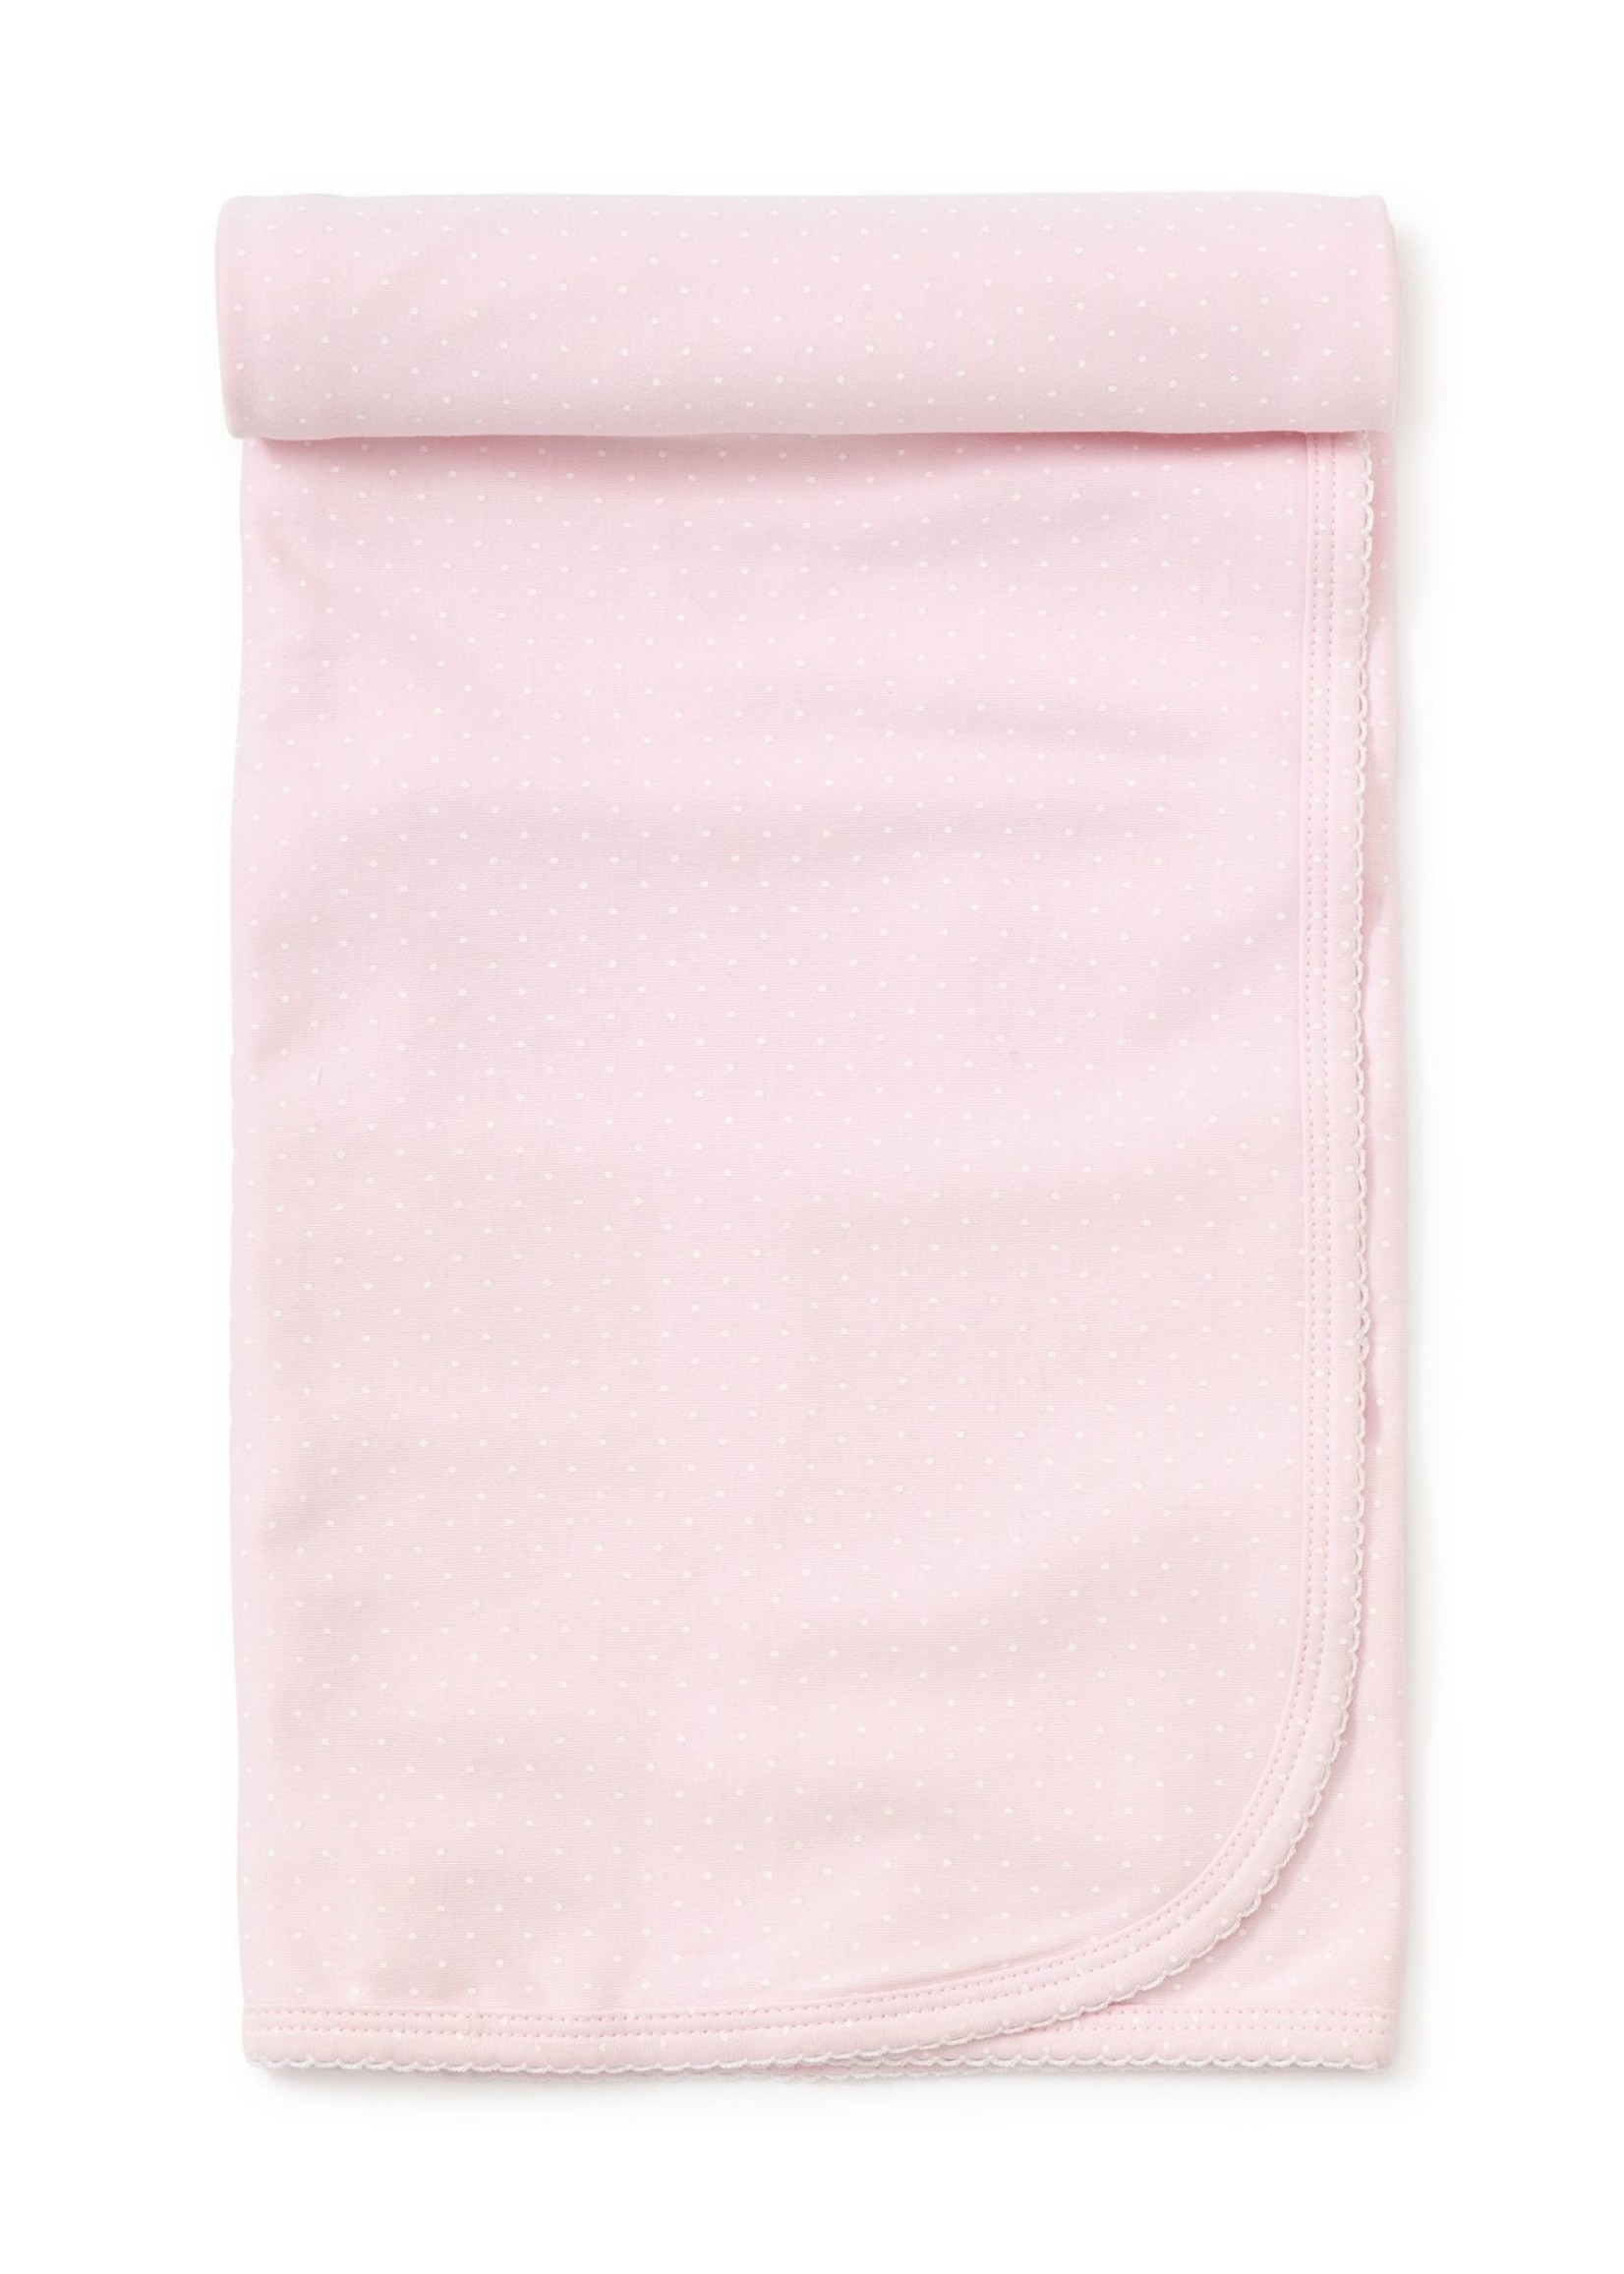 Kissy Kissy Pink w/ White Dot Blanket